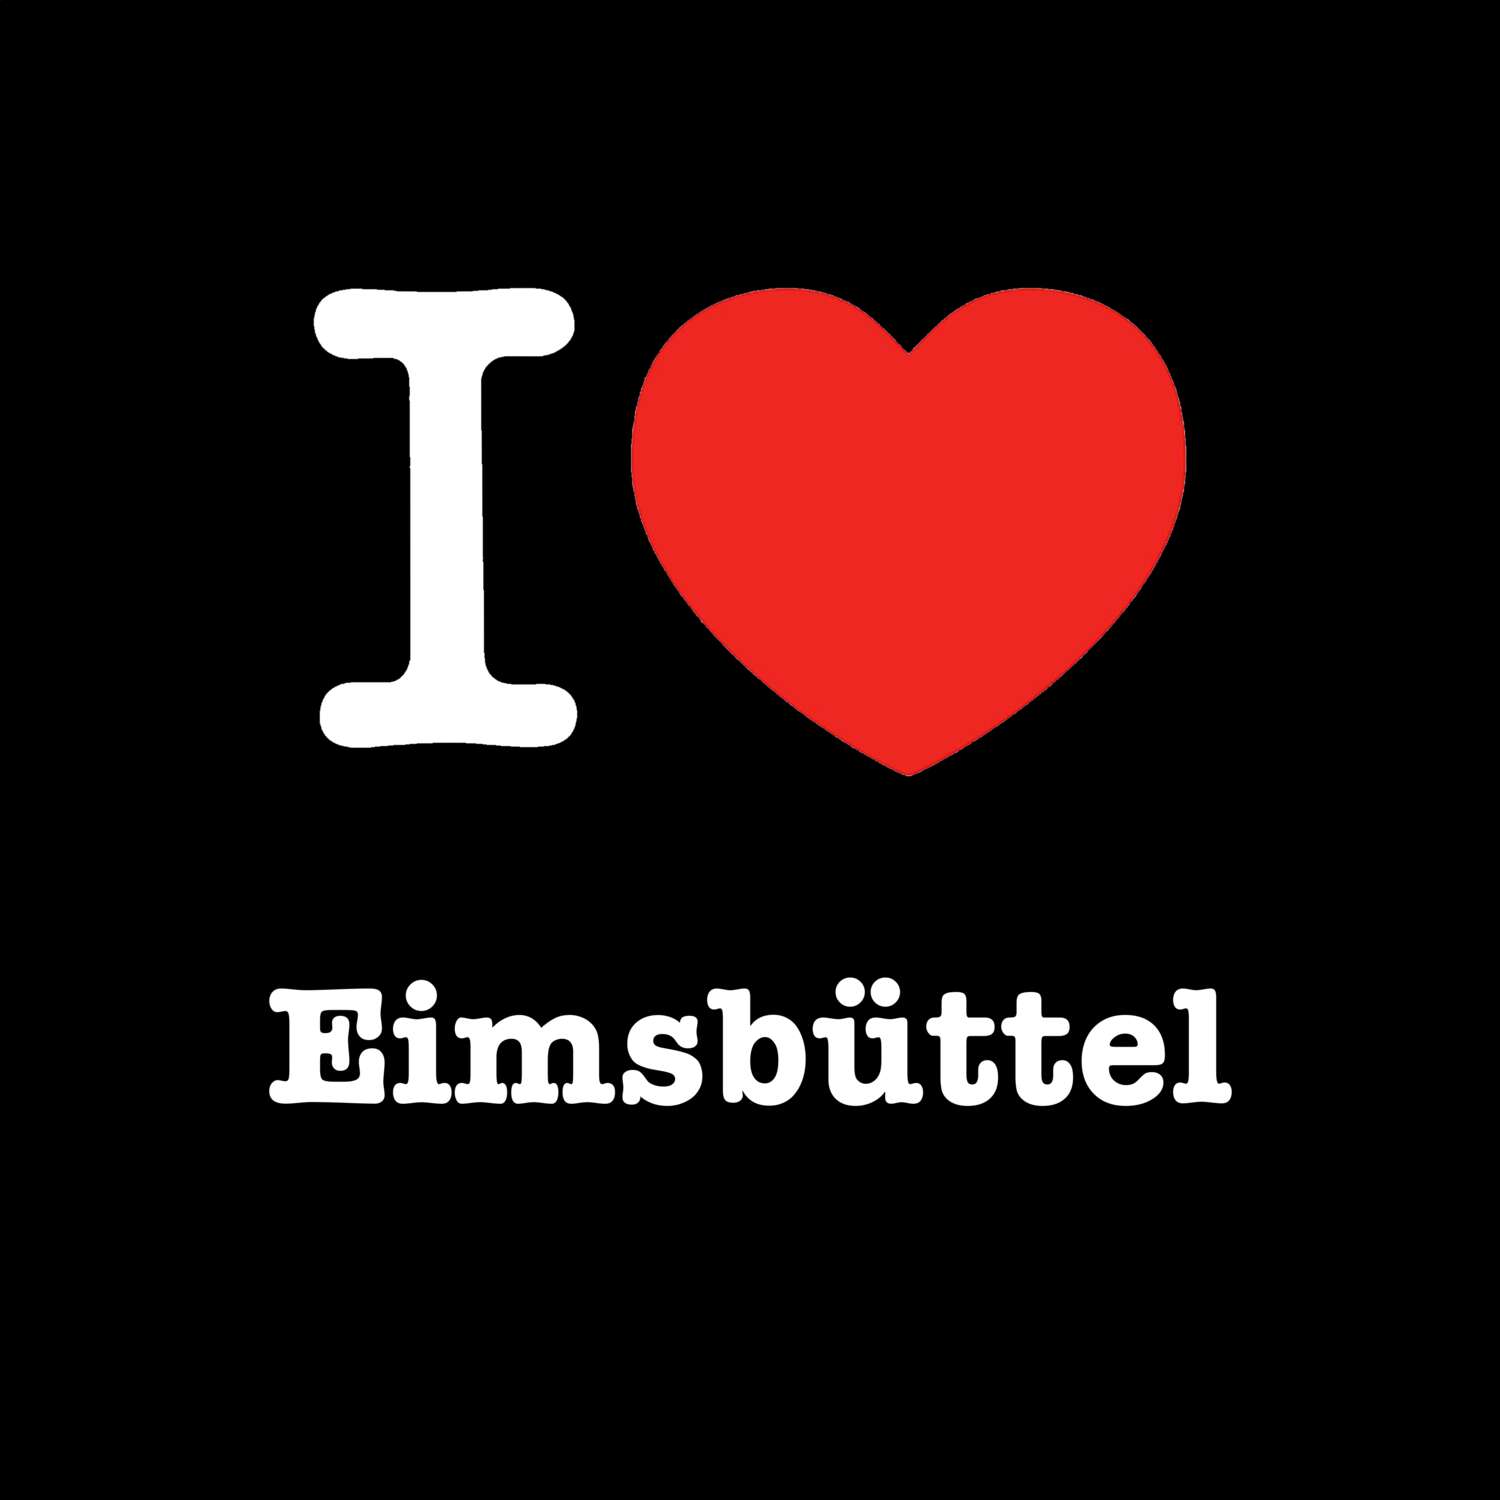 Eimsbüttel T-Shirt »I love«